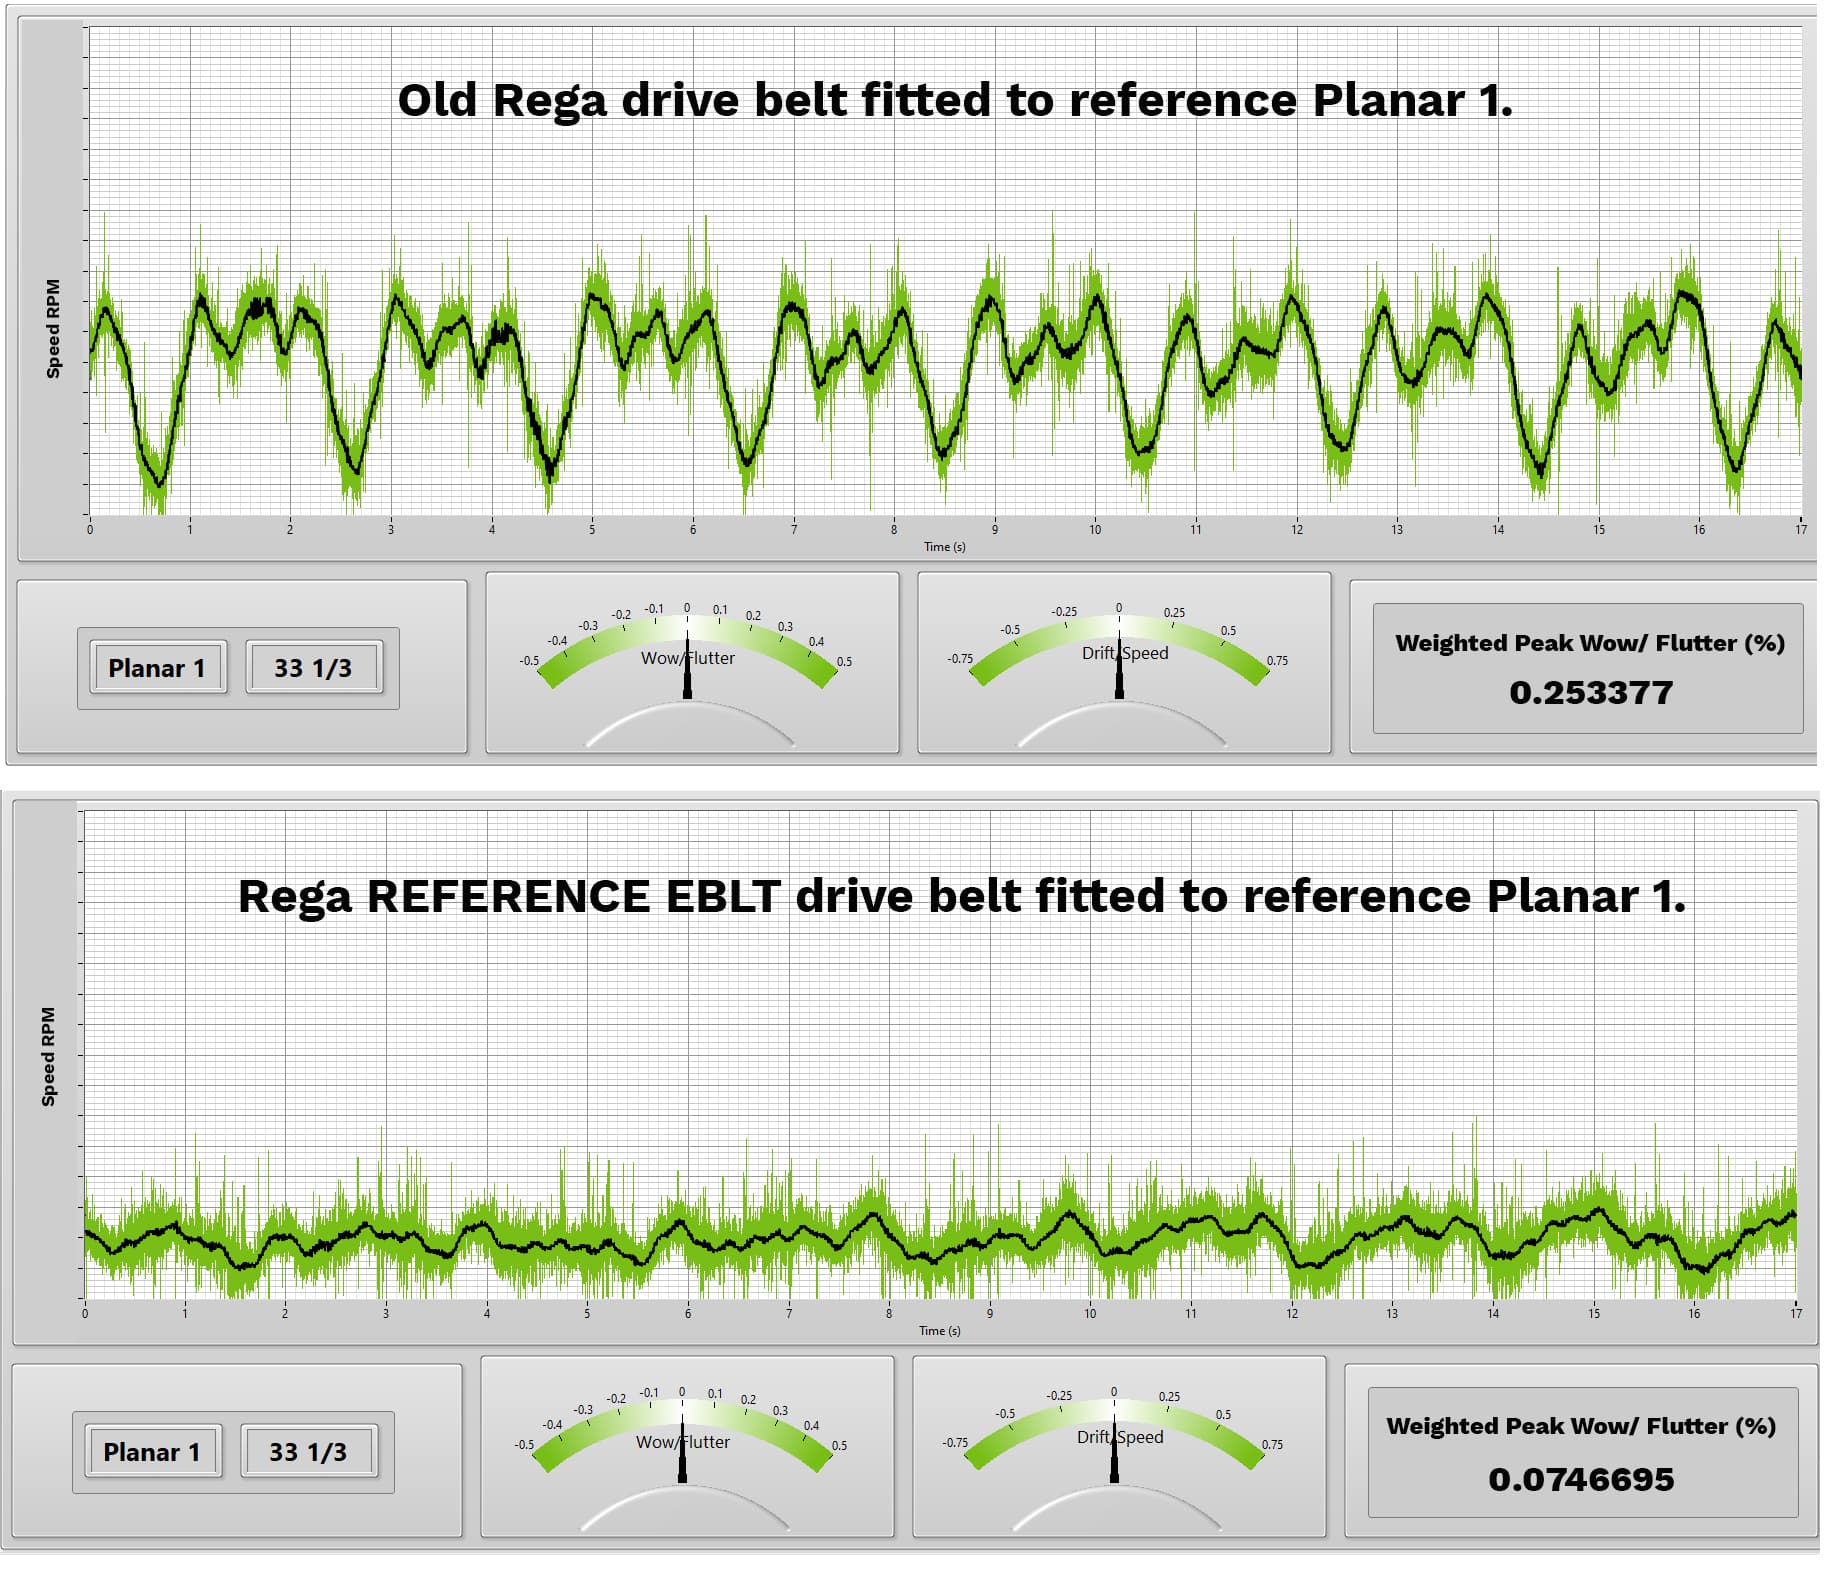 Drive belt performance comparison